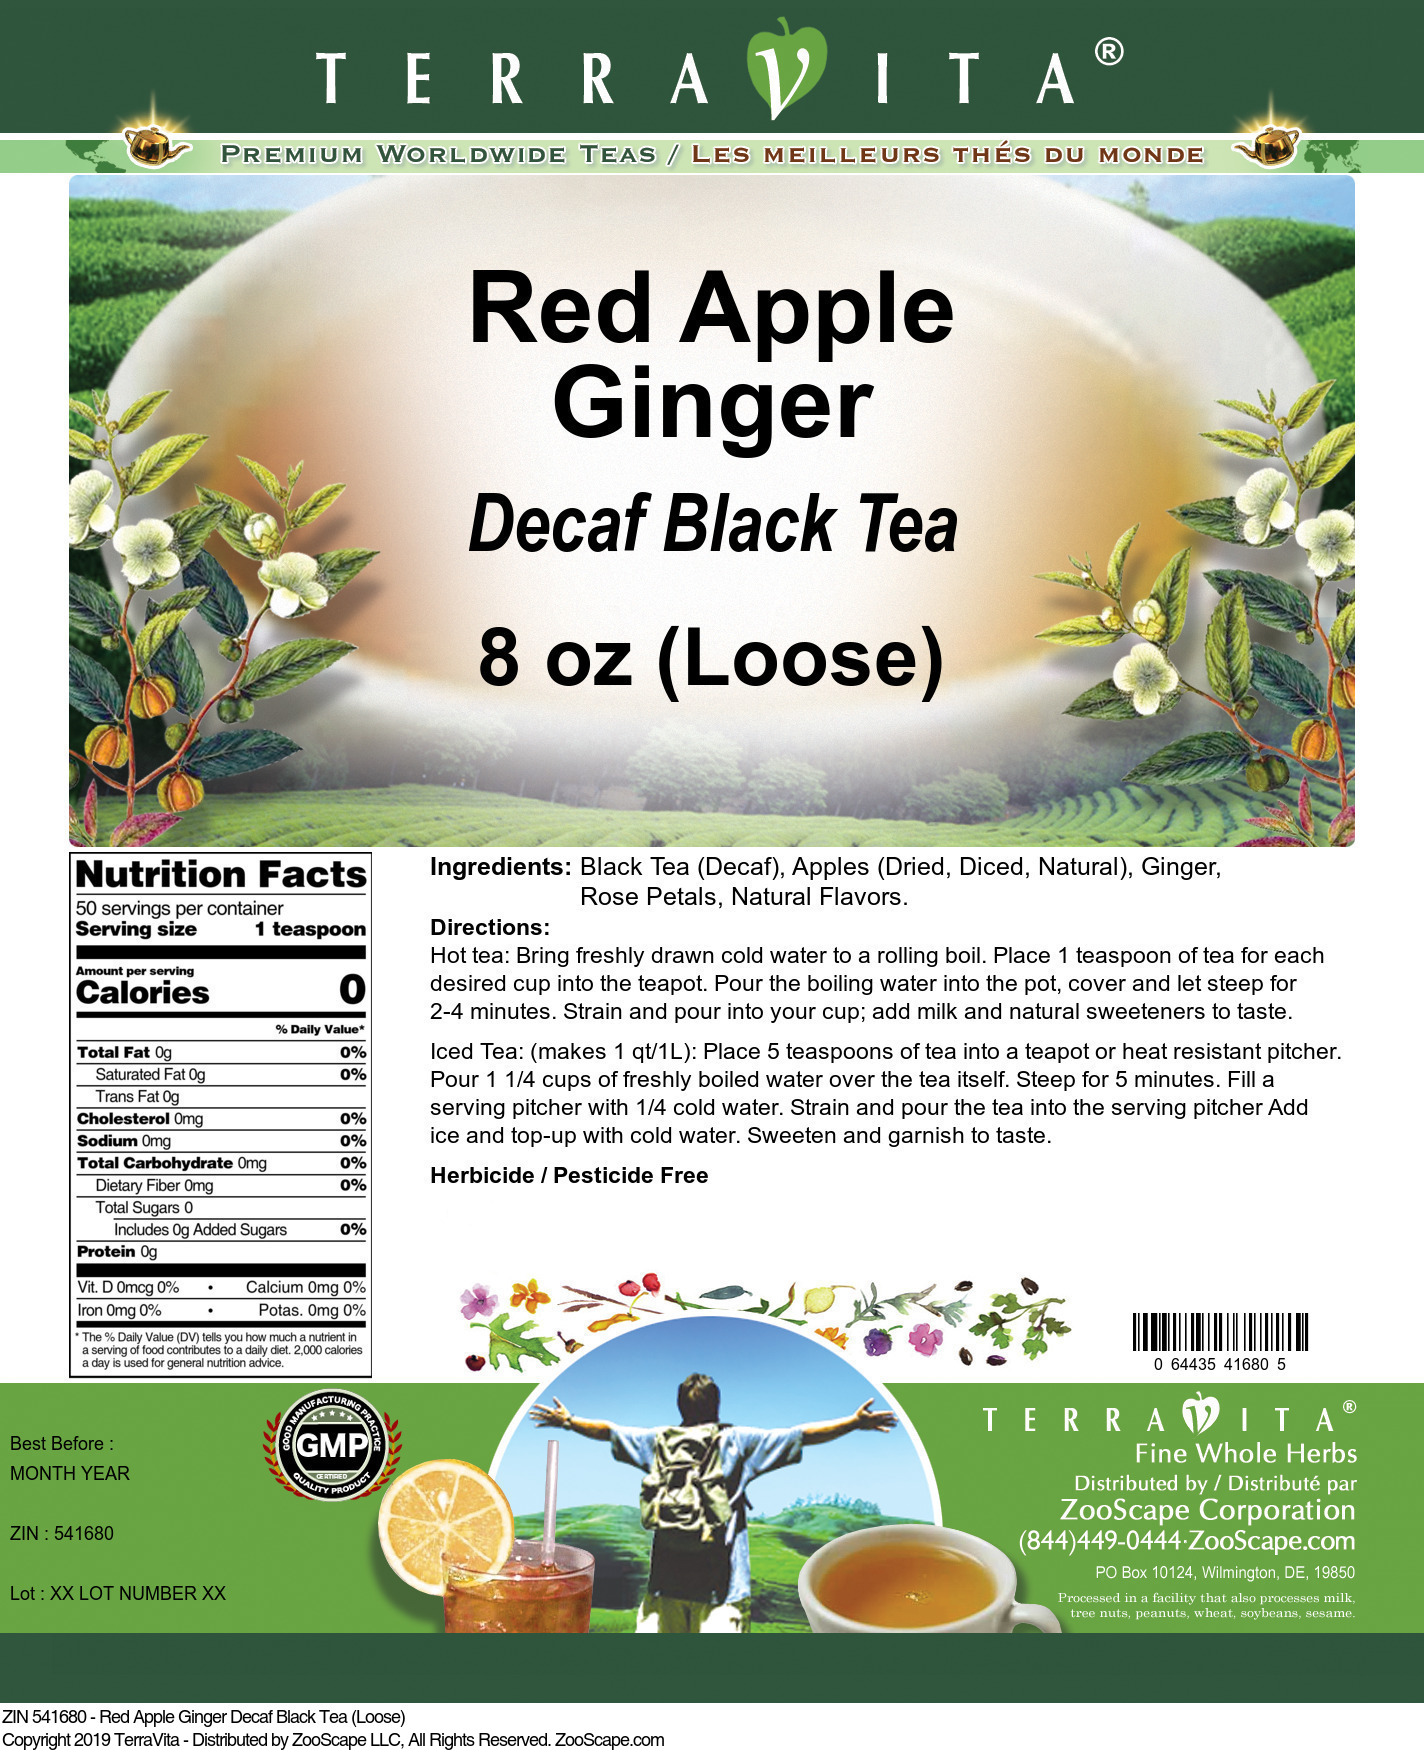 Red Apple Ginger Decaf Black Tea (Loose) - Label